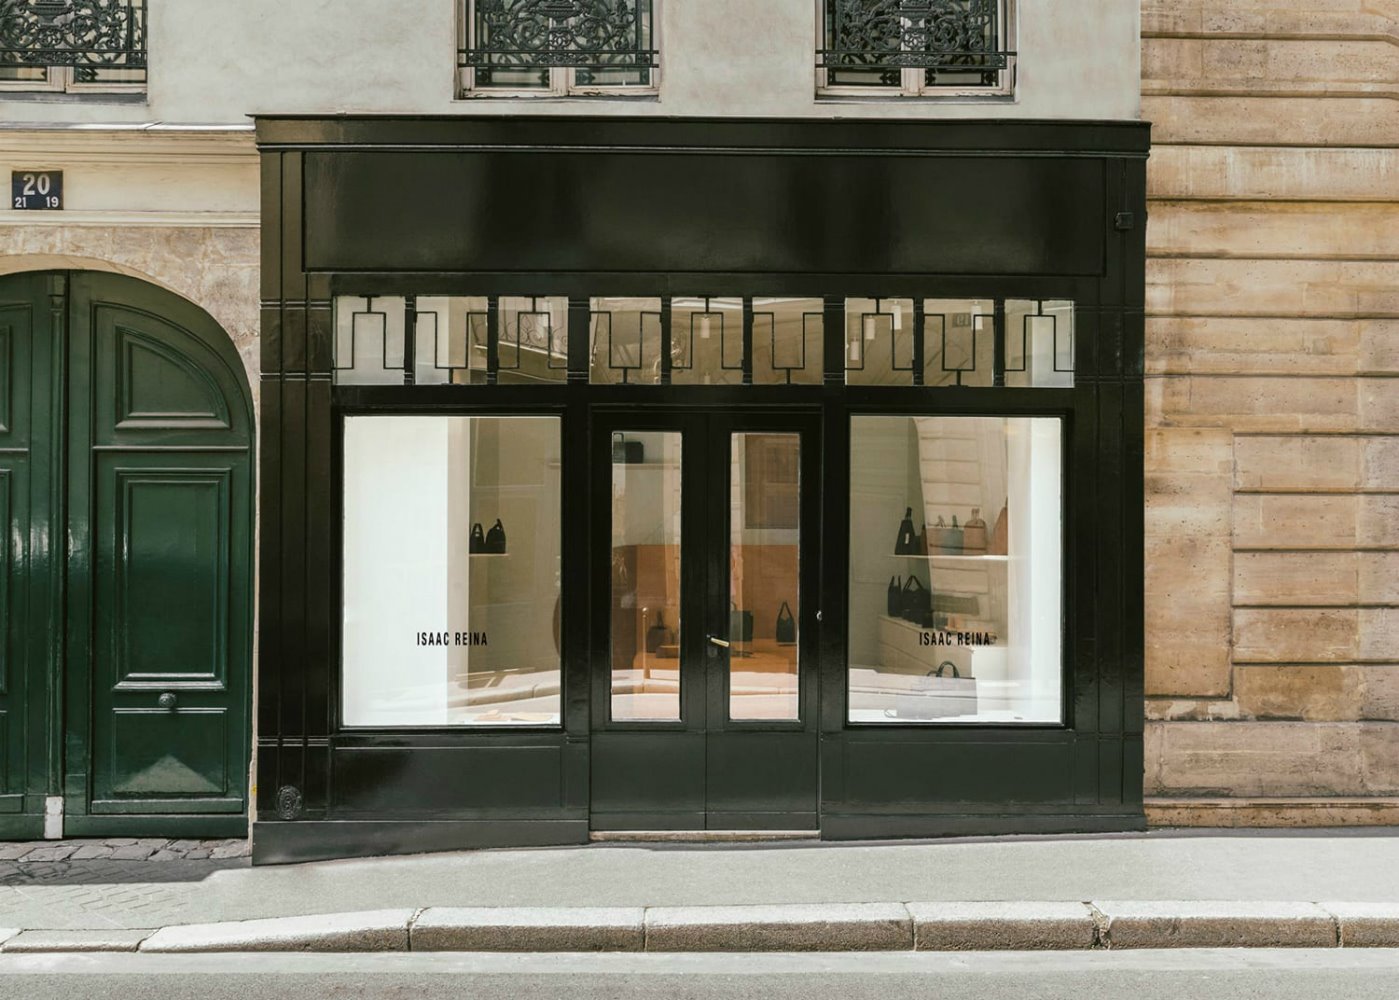 Boutique de Isaac Reina en París por Bernard Dubois 